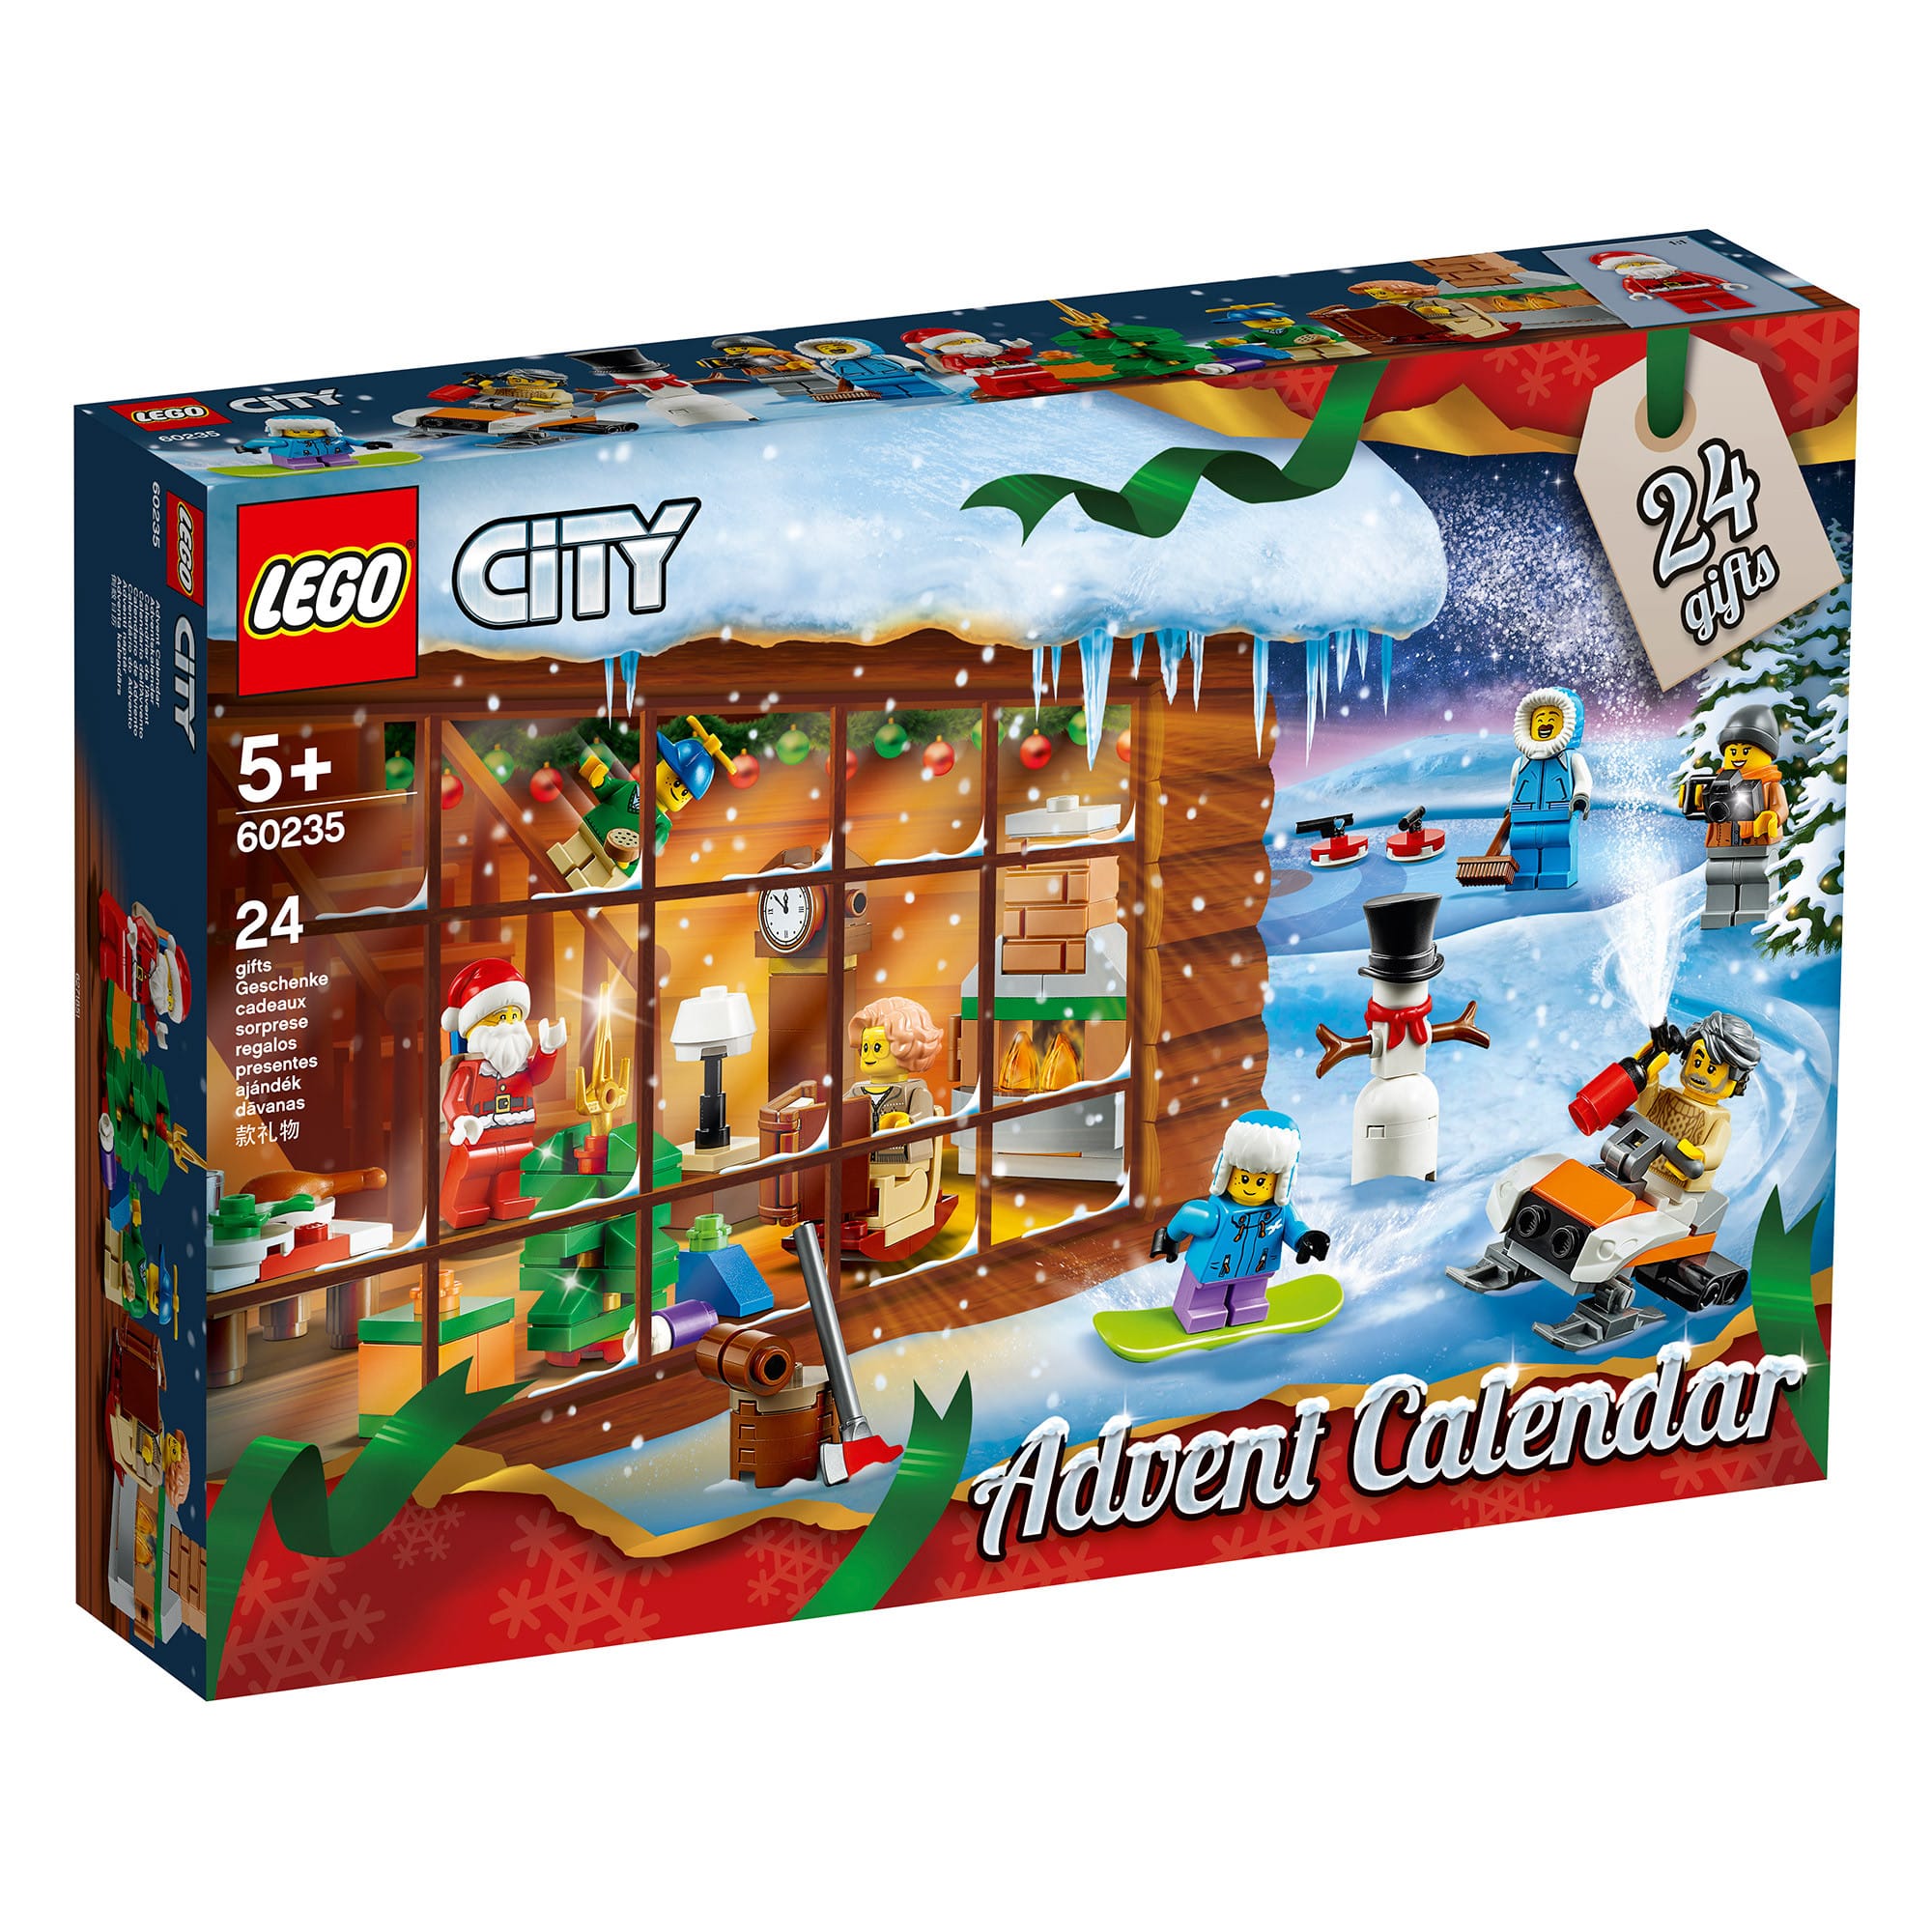 LEGO City 60235 - Advent Calendar